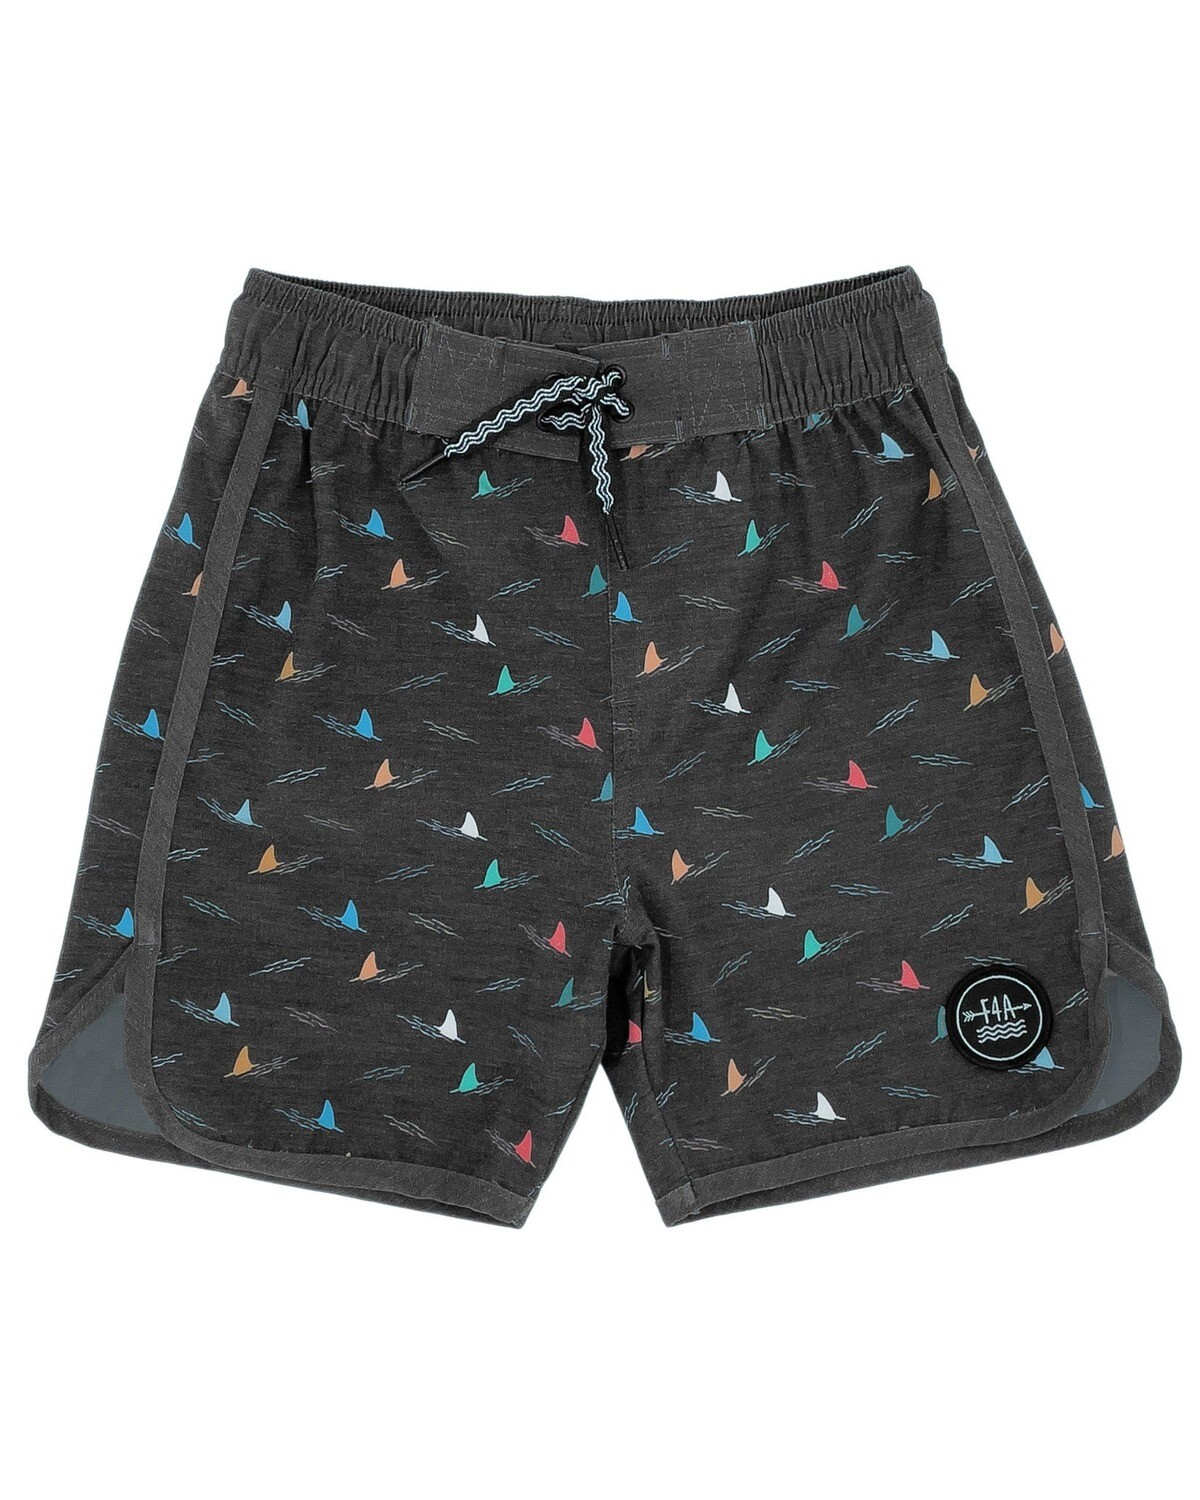 Shark Fin Board Shorts